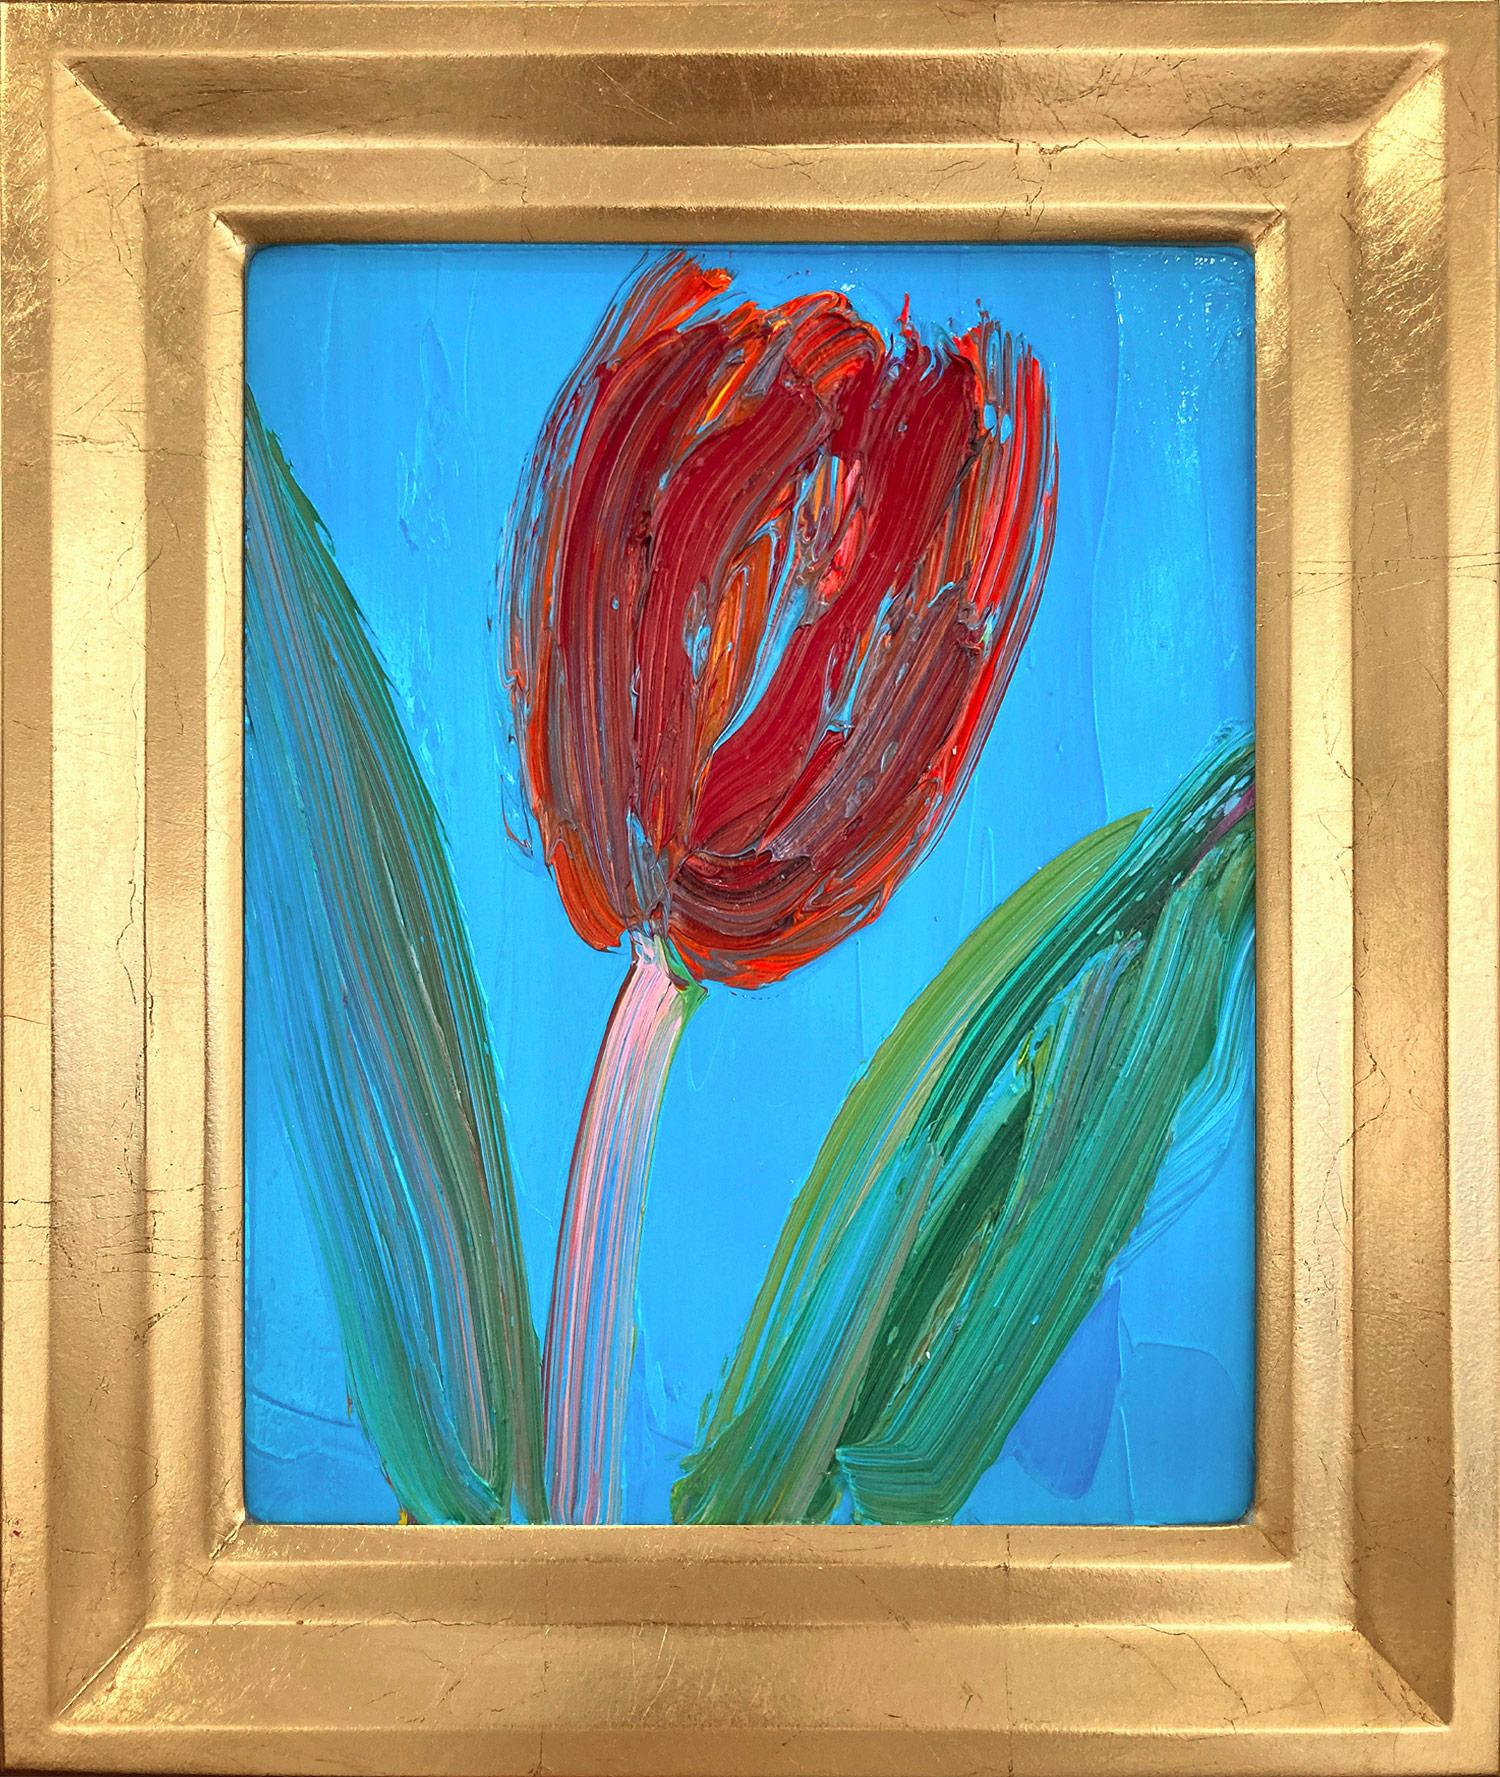 « Pink Stem », tulipe rouge sur fond bleu céruléen clair, peinture à l'huile encadrée